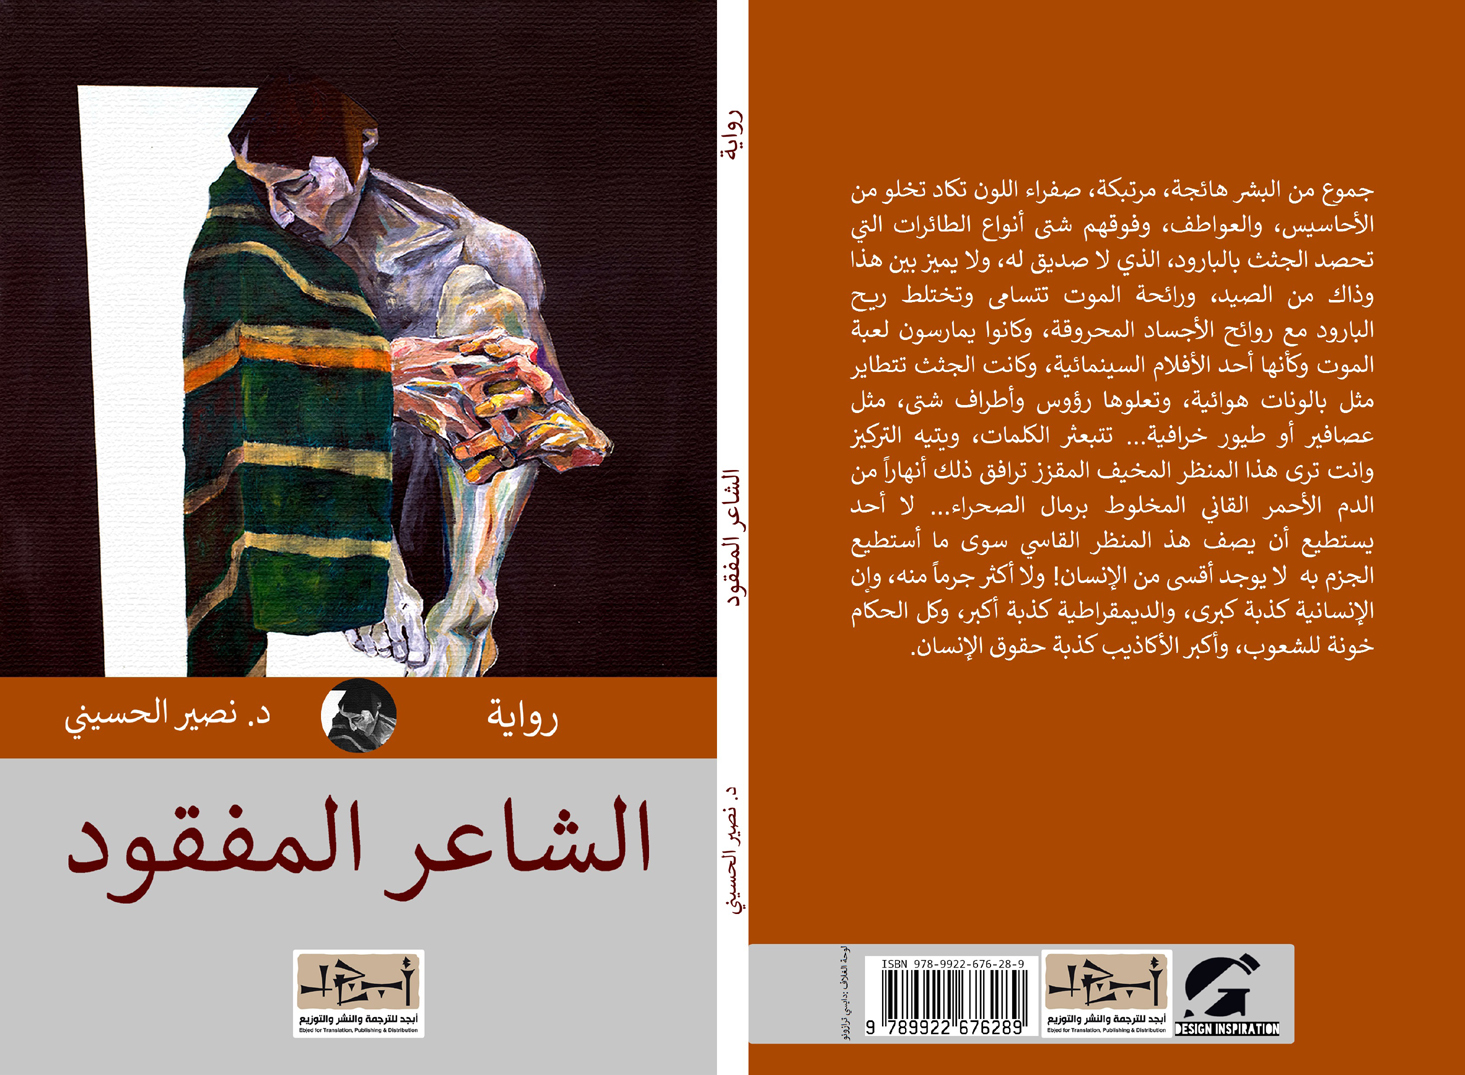 اسم الكتاب: الشاعر المفقود تأليف: د. نصير الحسيني 